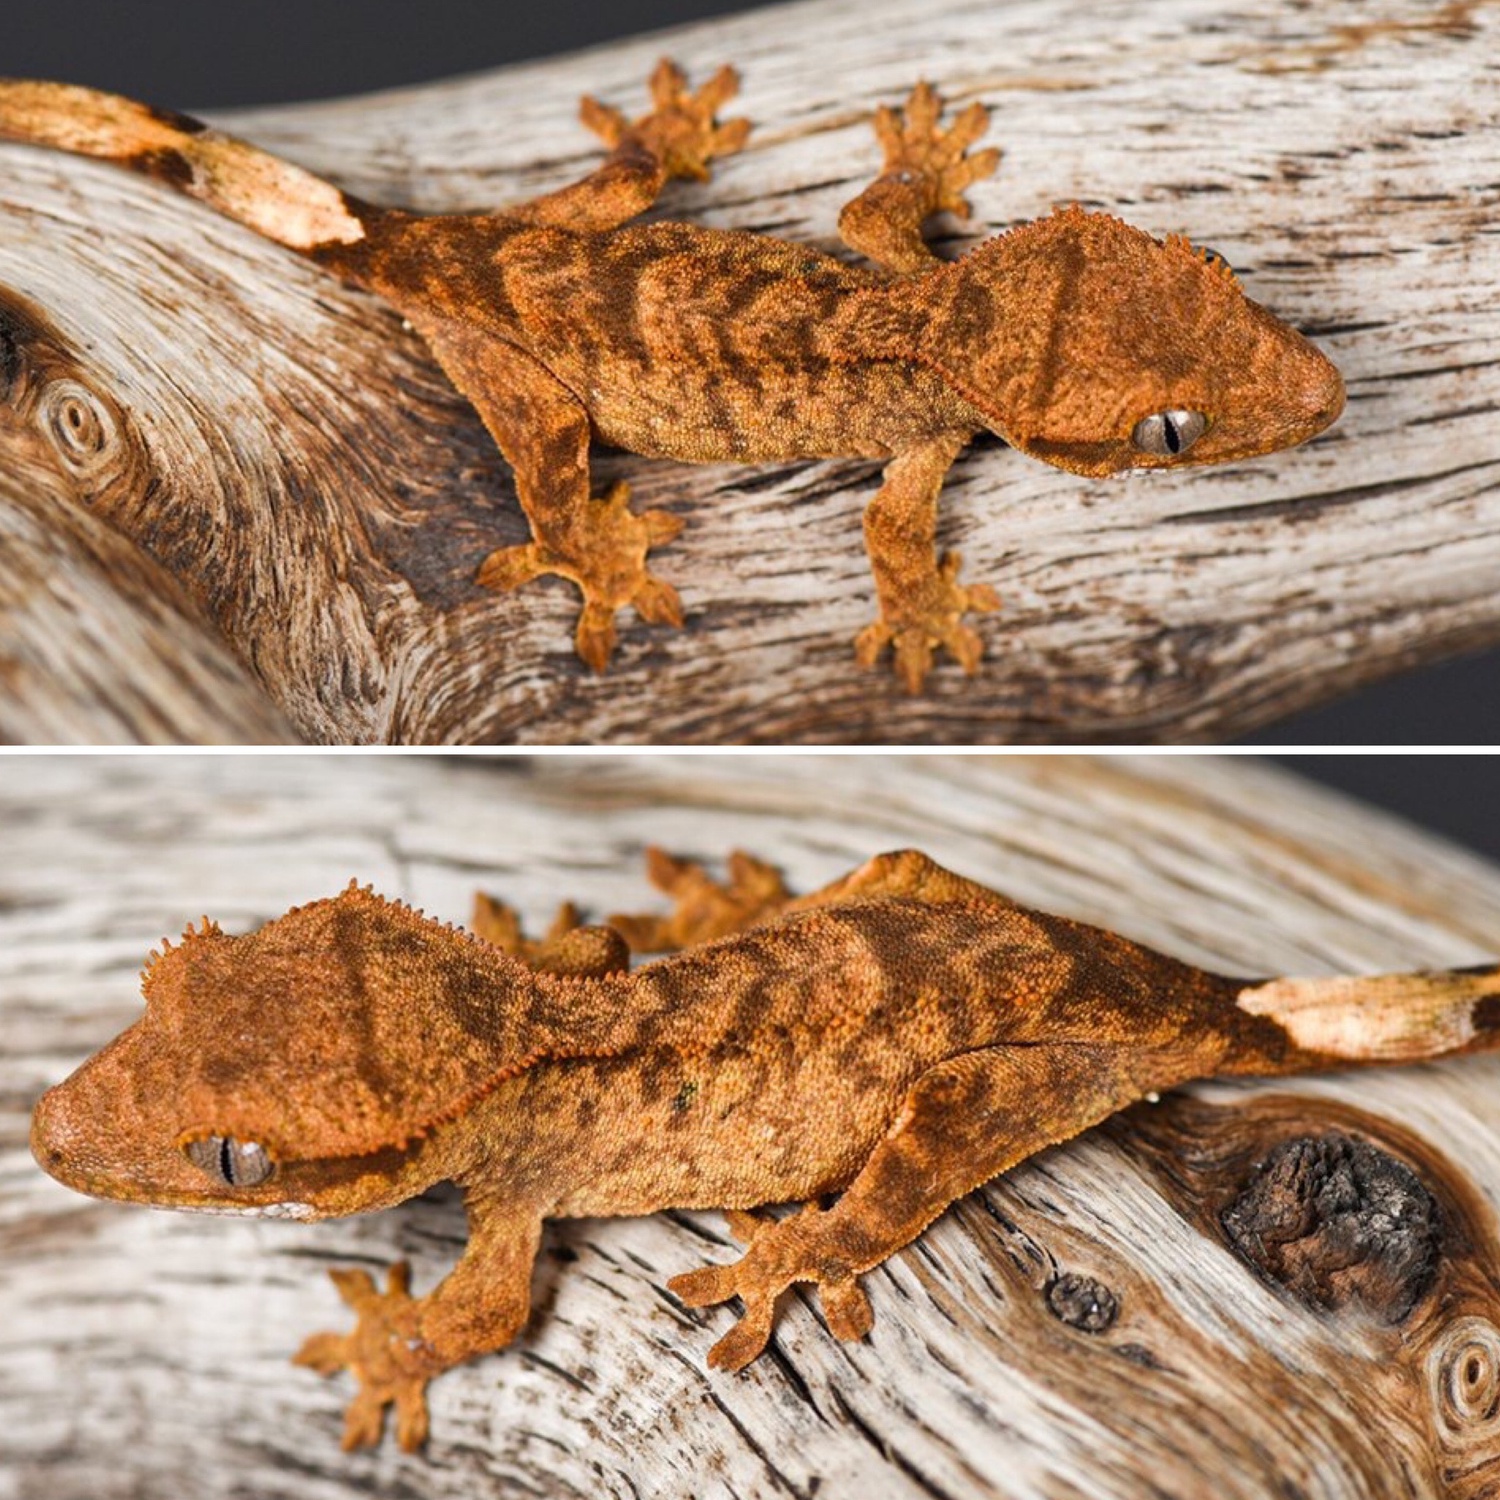 Super Tiger Crested Gecko by Fringemorphs